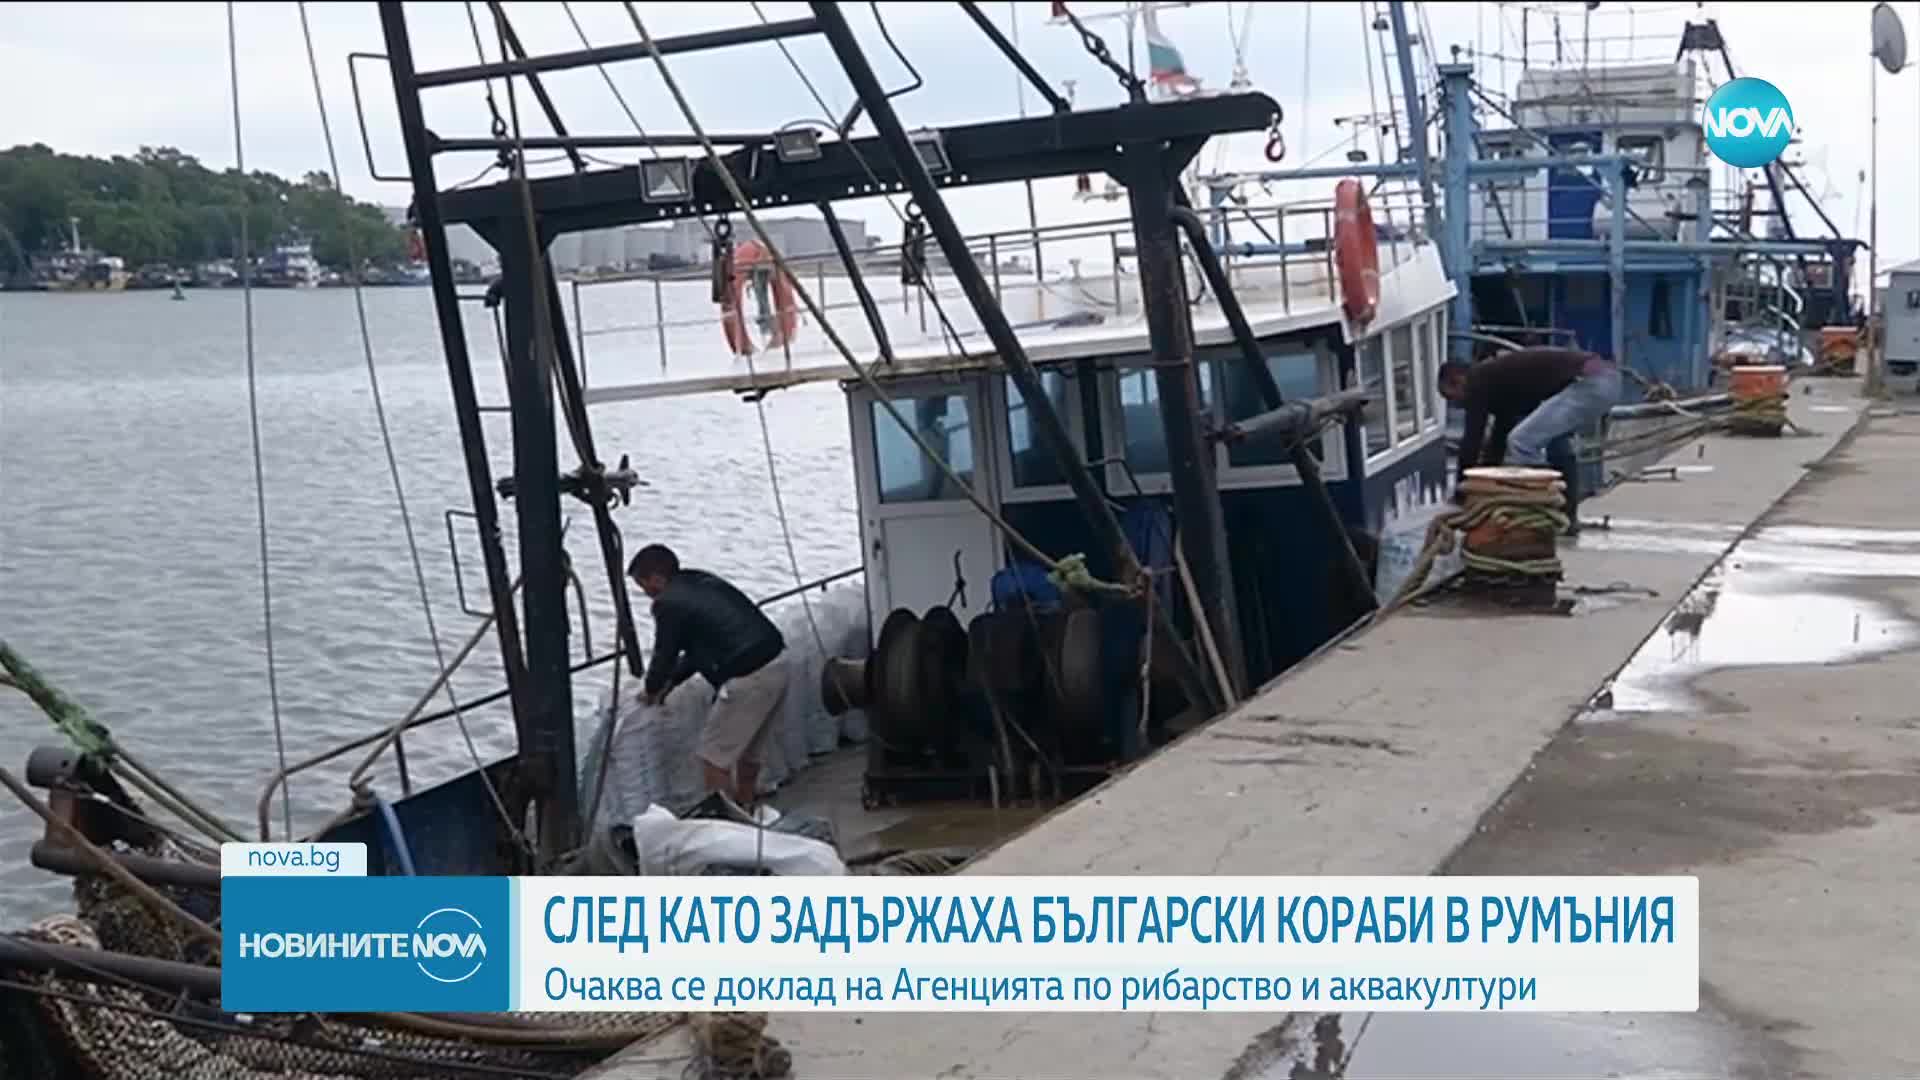 ИАРА с доклад за случая със задържаните край Румъния български моряци